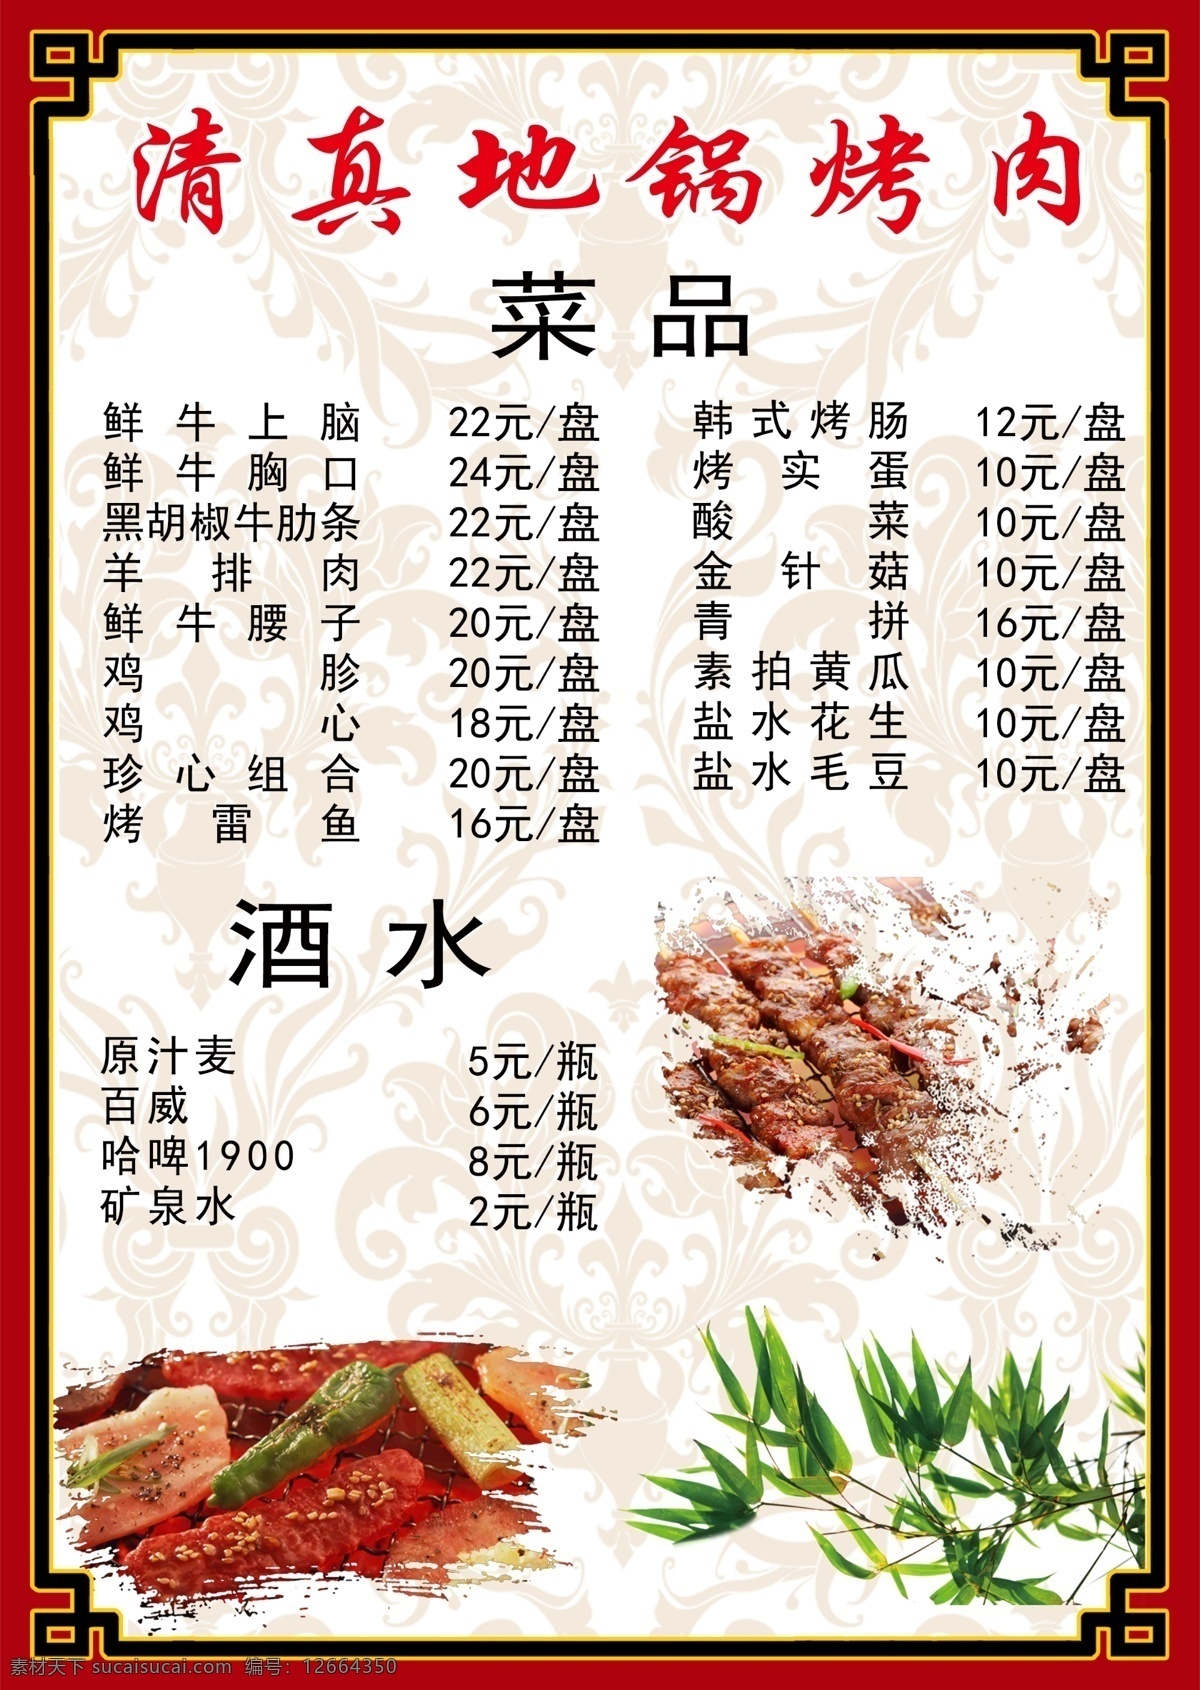 清真 锅 烤肉 菜单 地锅 餐饮 美食 美味 小吃 边框 底纹 竹子 菜单菜谱